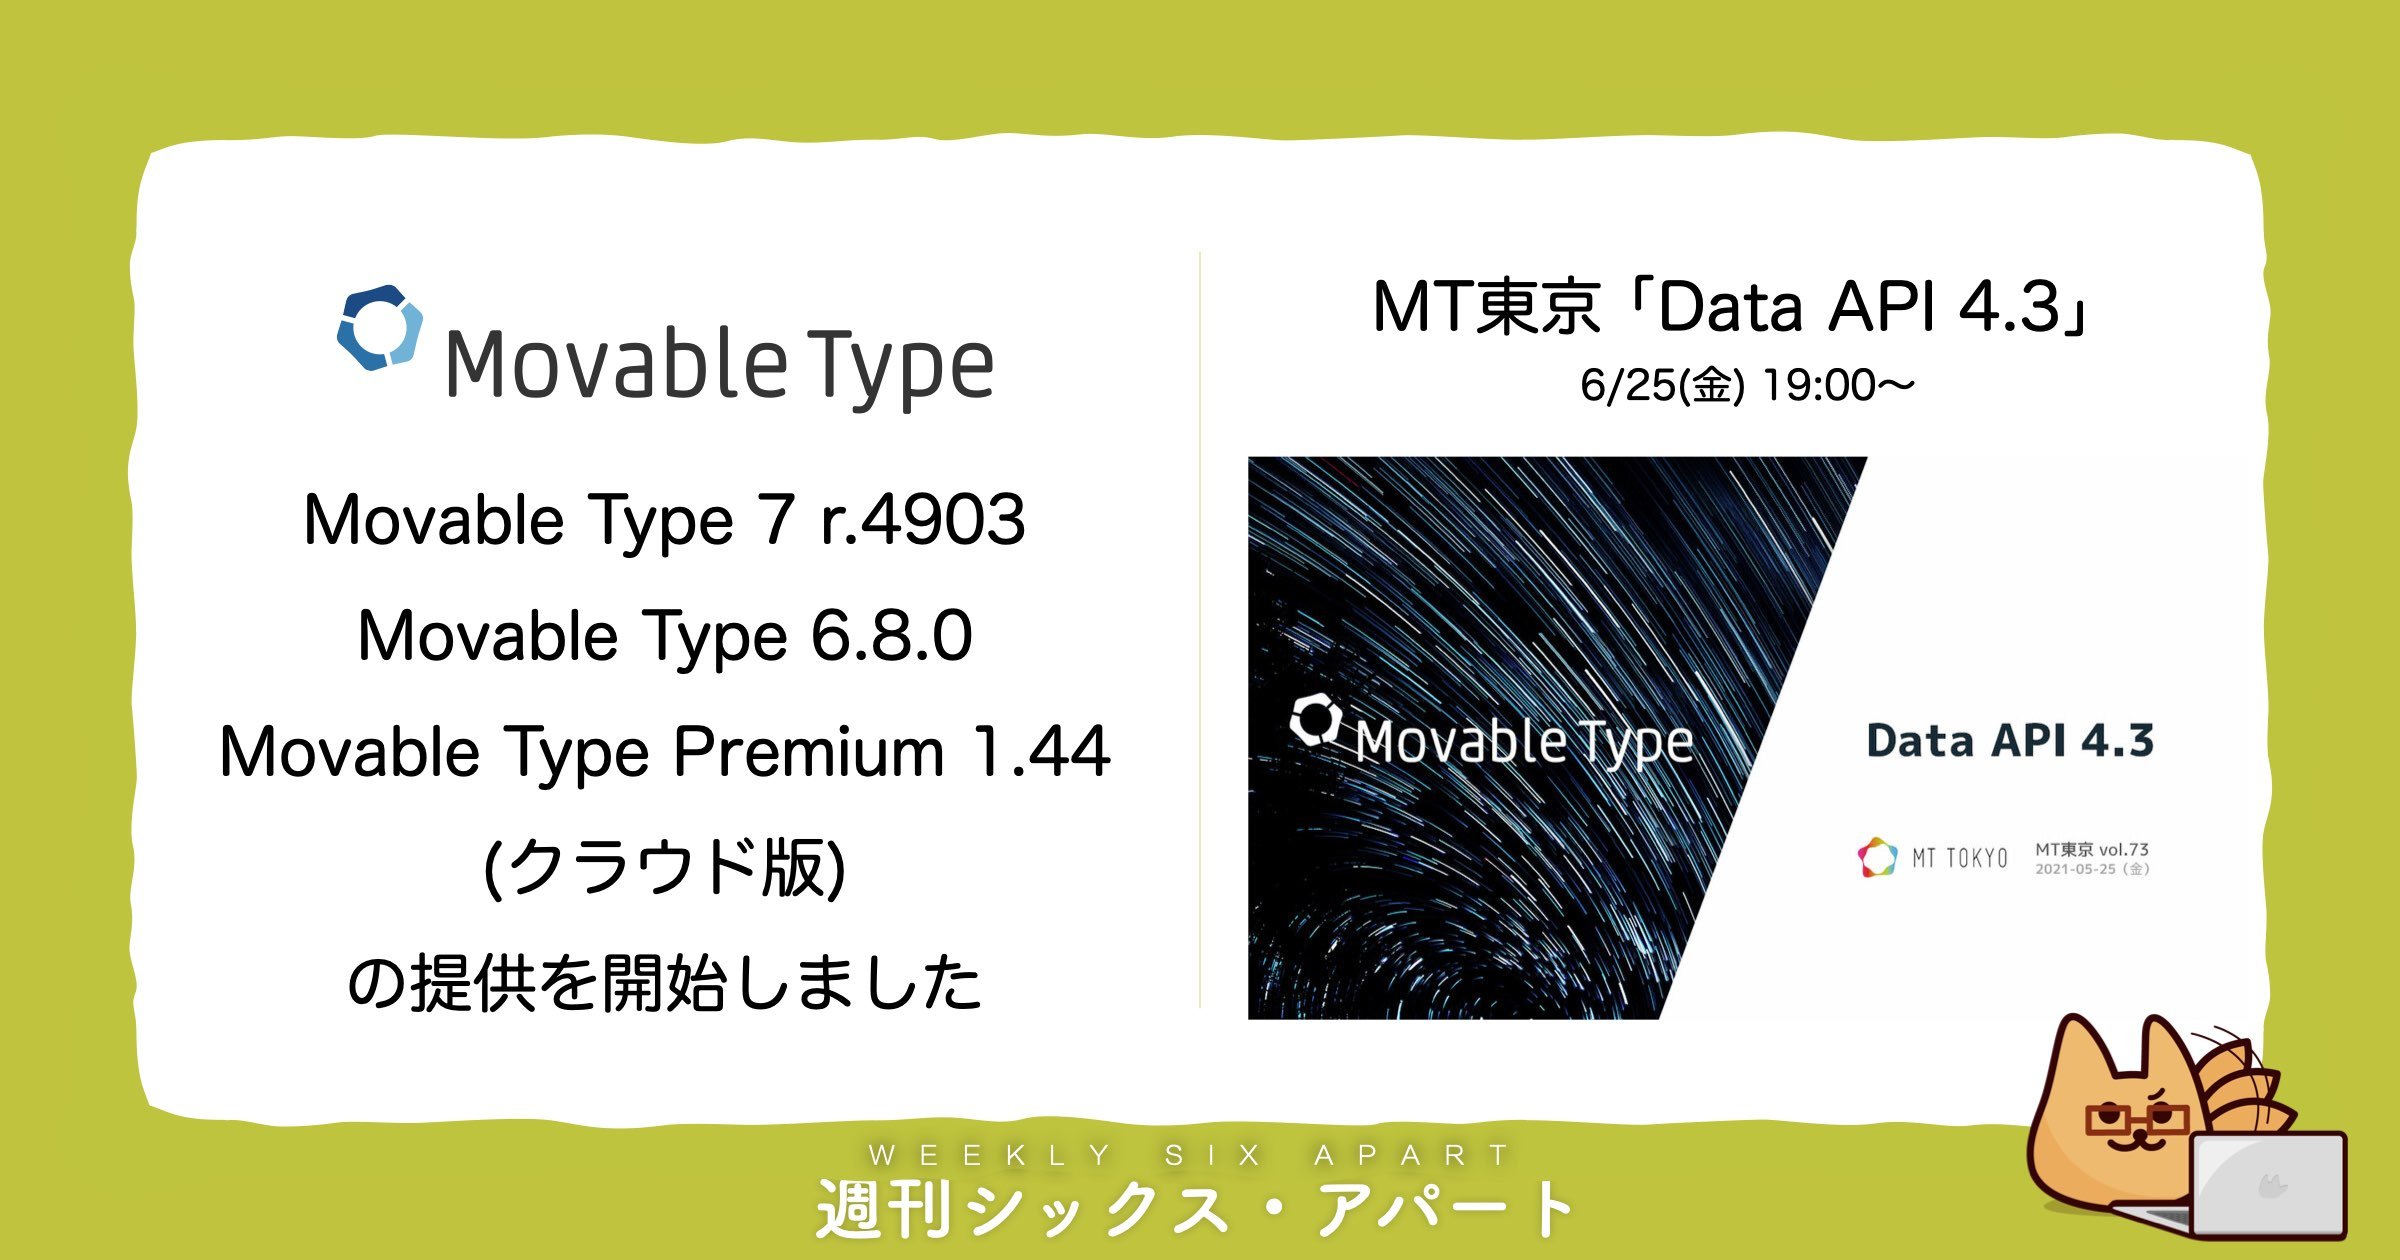 Movable Type アップデート提供開始＆6/25はMT東京主催 Data API テーマのイベントです #週刊SA